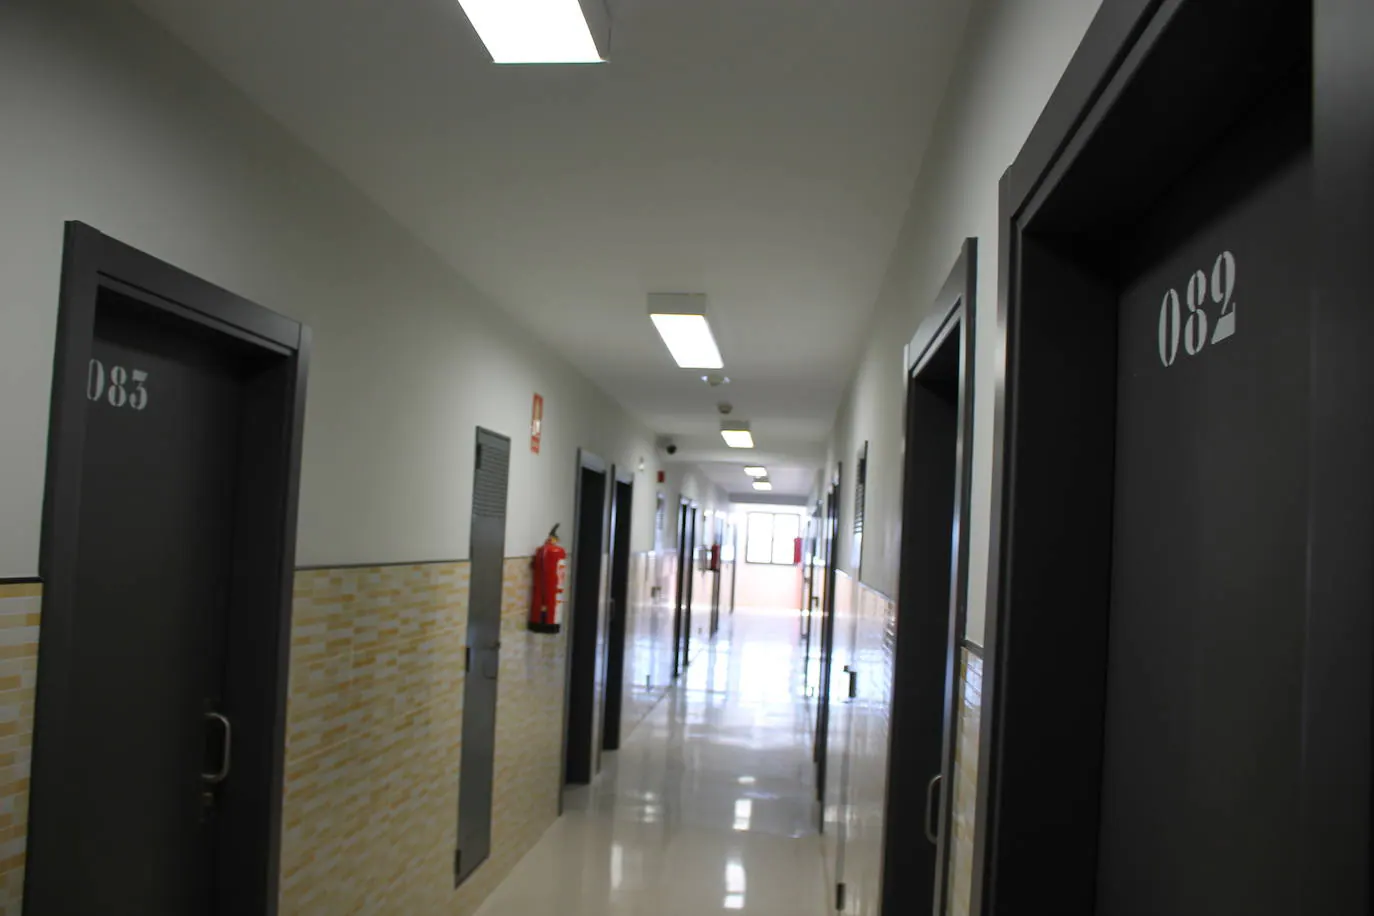 Abre las puertas de las modernas instalaciones en las que los internos almerienses se preparan para su total reinserción